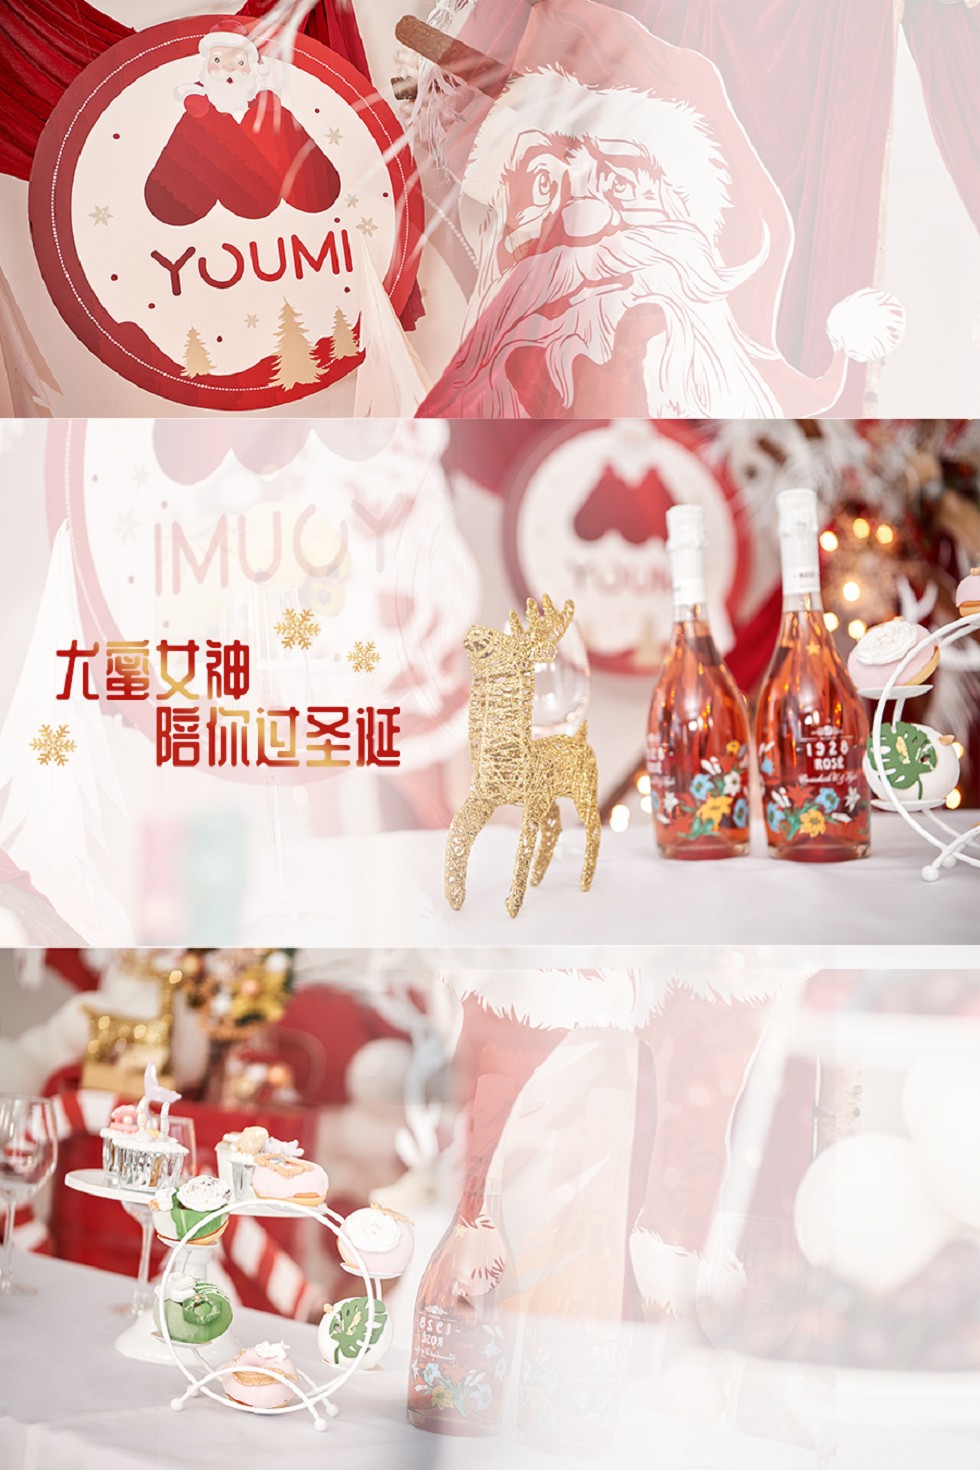 YouMi尤蜜尤蜜合辑位模特情聚圣诞主题红色情趣内衣完美魅惑套图写真